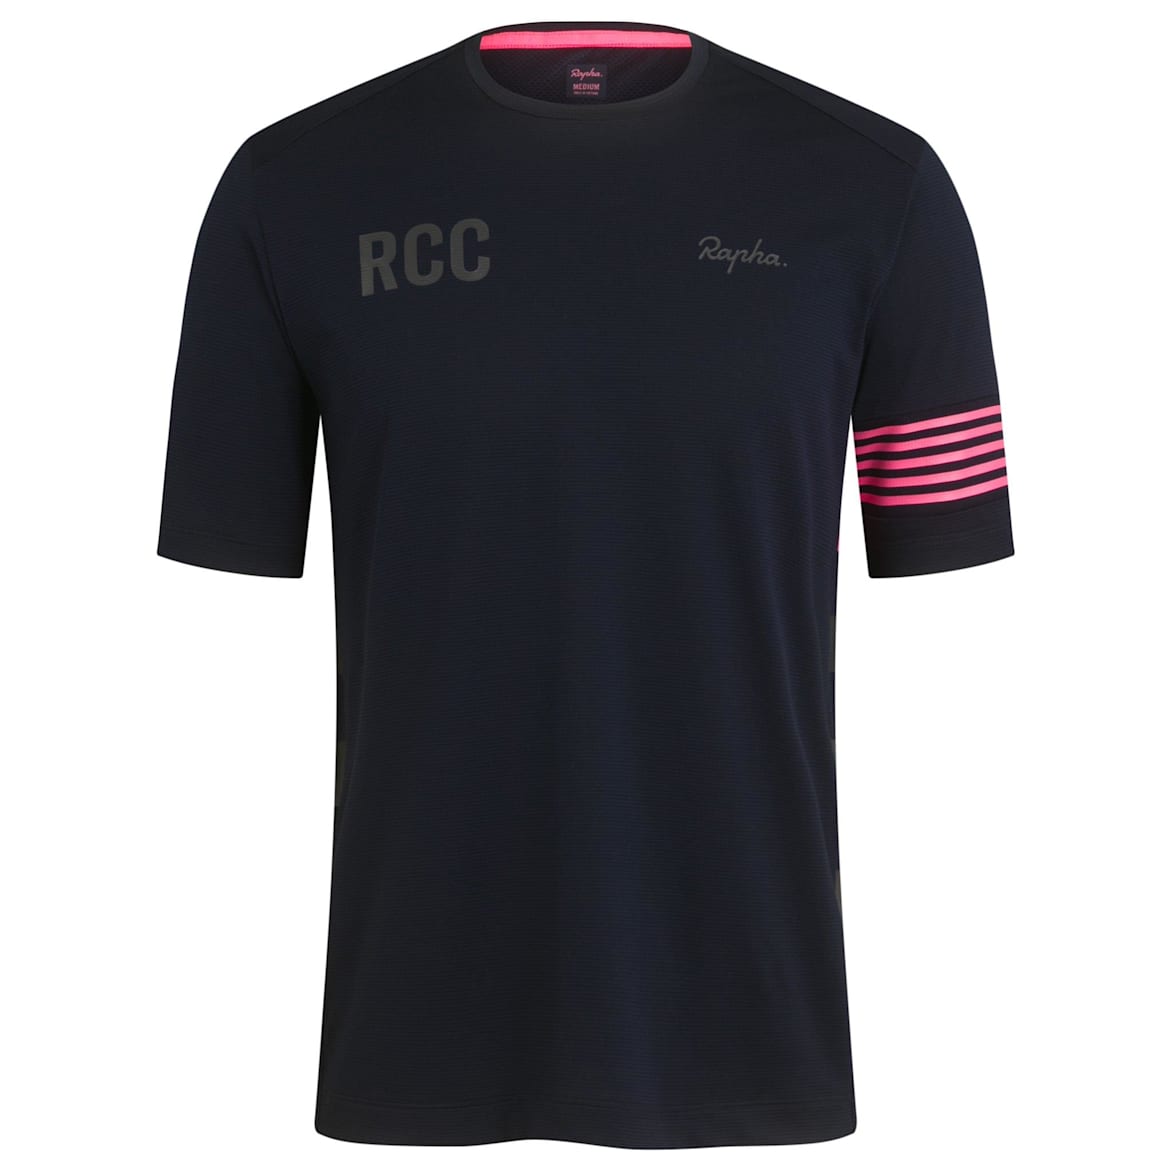 RCC 테크니컬 티셔츠